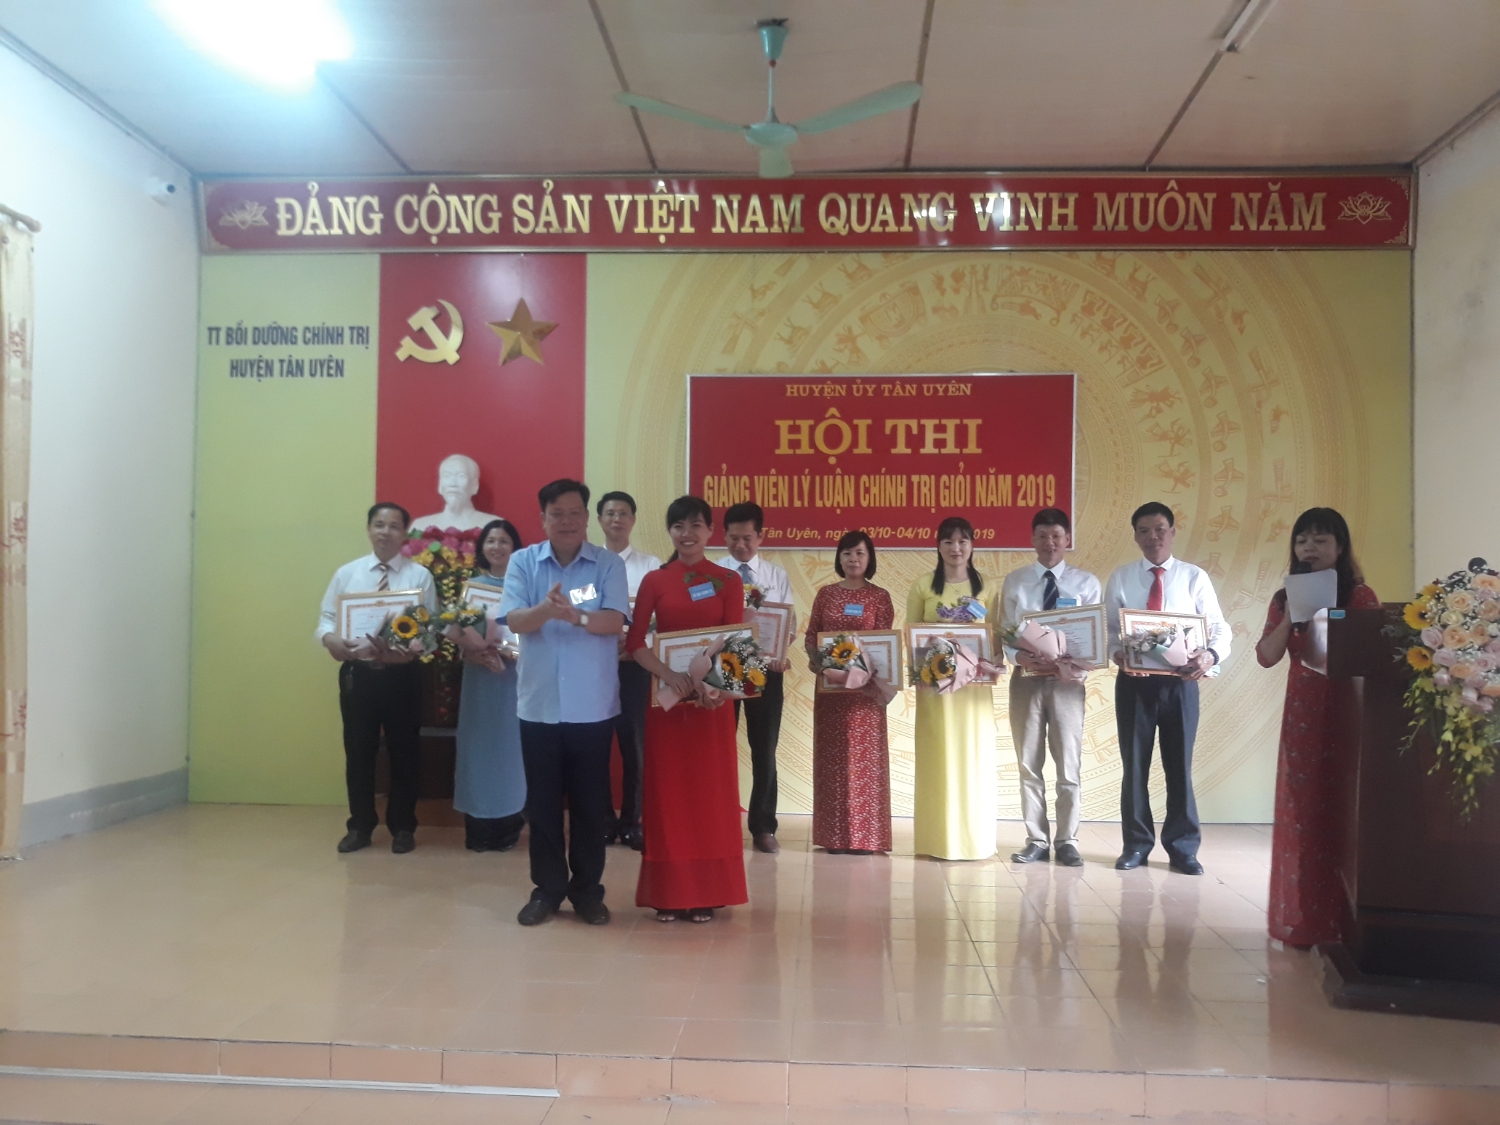 Đ/c Phan Văn Nguyên - Phó Bí thư Thường trực Huyện ủy, Chủ tịch HĐND huyện, Trưởng ban Tổ chức Hội thi trao giải nhất cho thí sinh